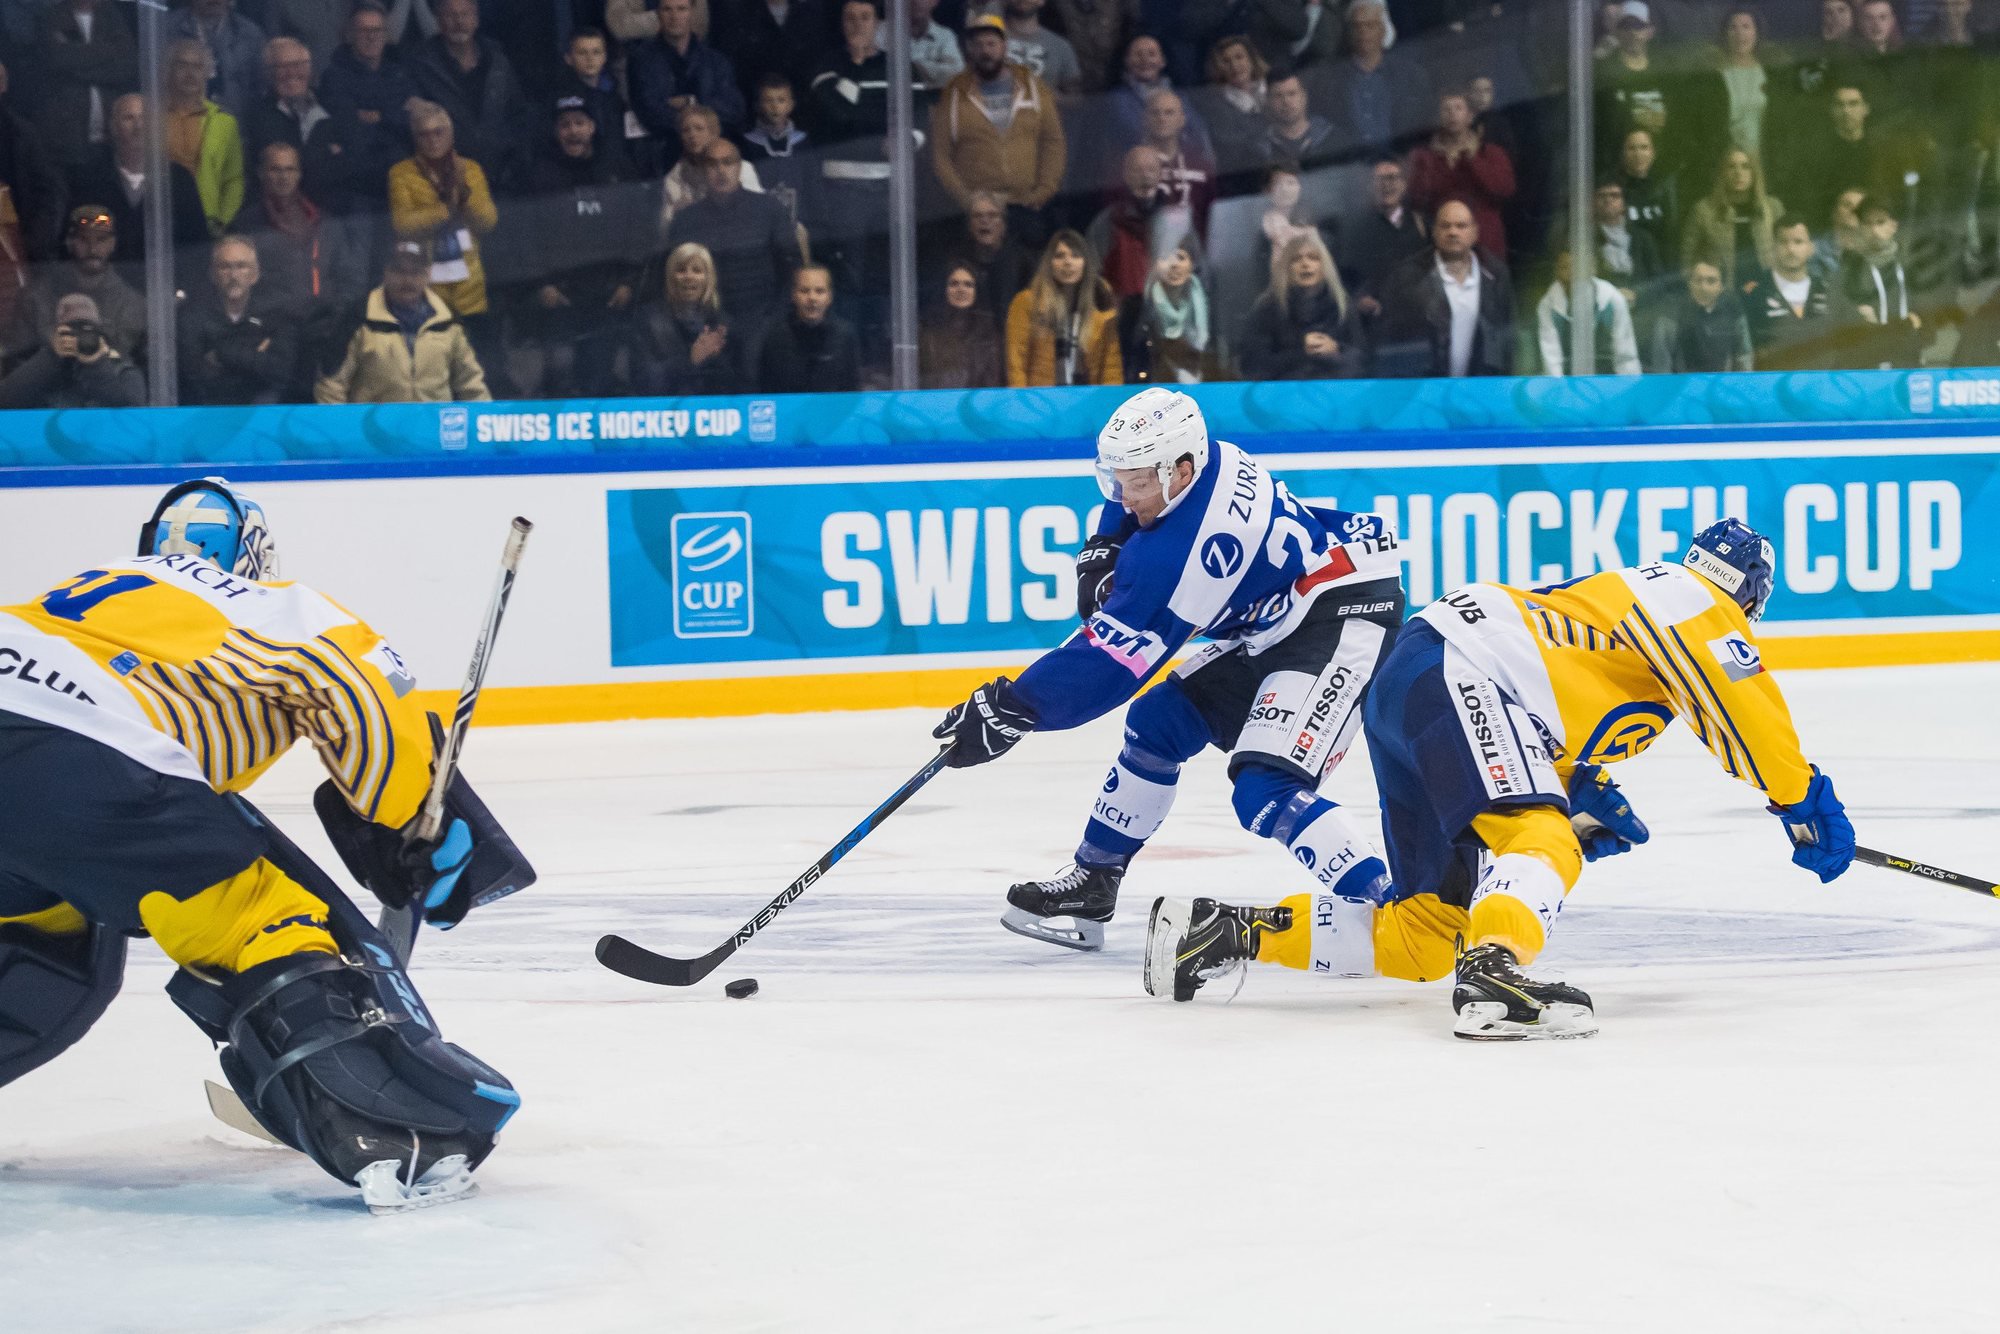 Daniel Carbis (en bleu) se défait du Davosien Sven Jung avant d'aller affronter le gardien Anders Lindbäck: sans succès.